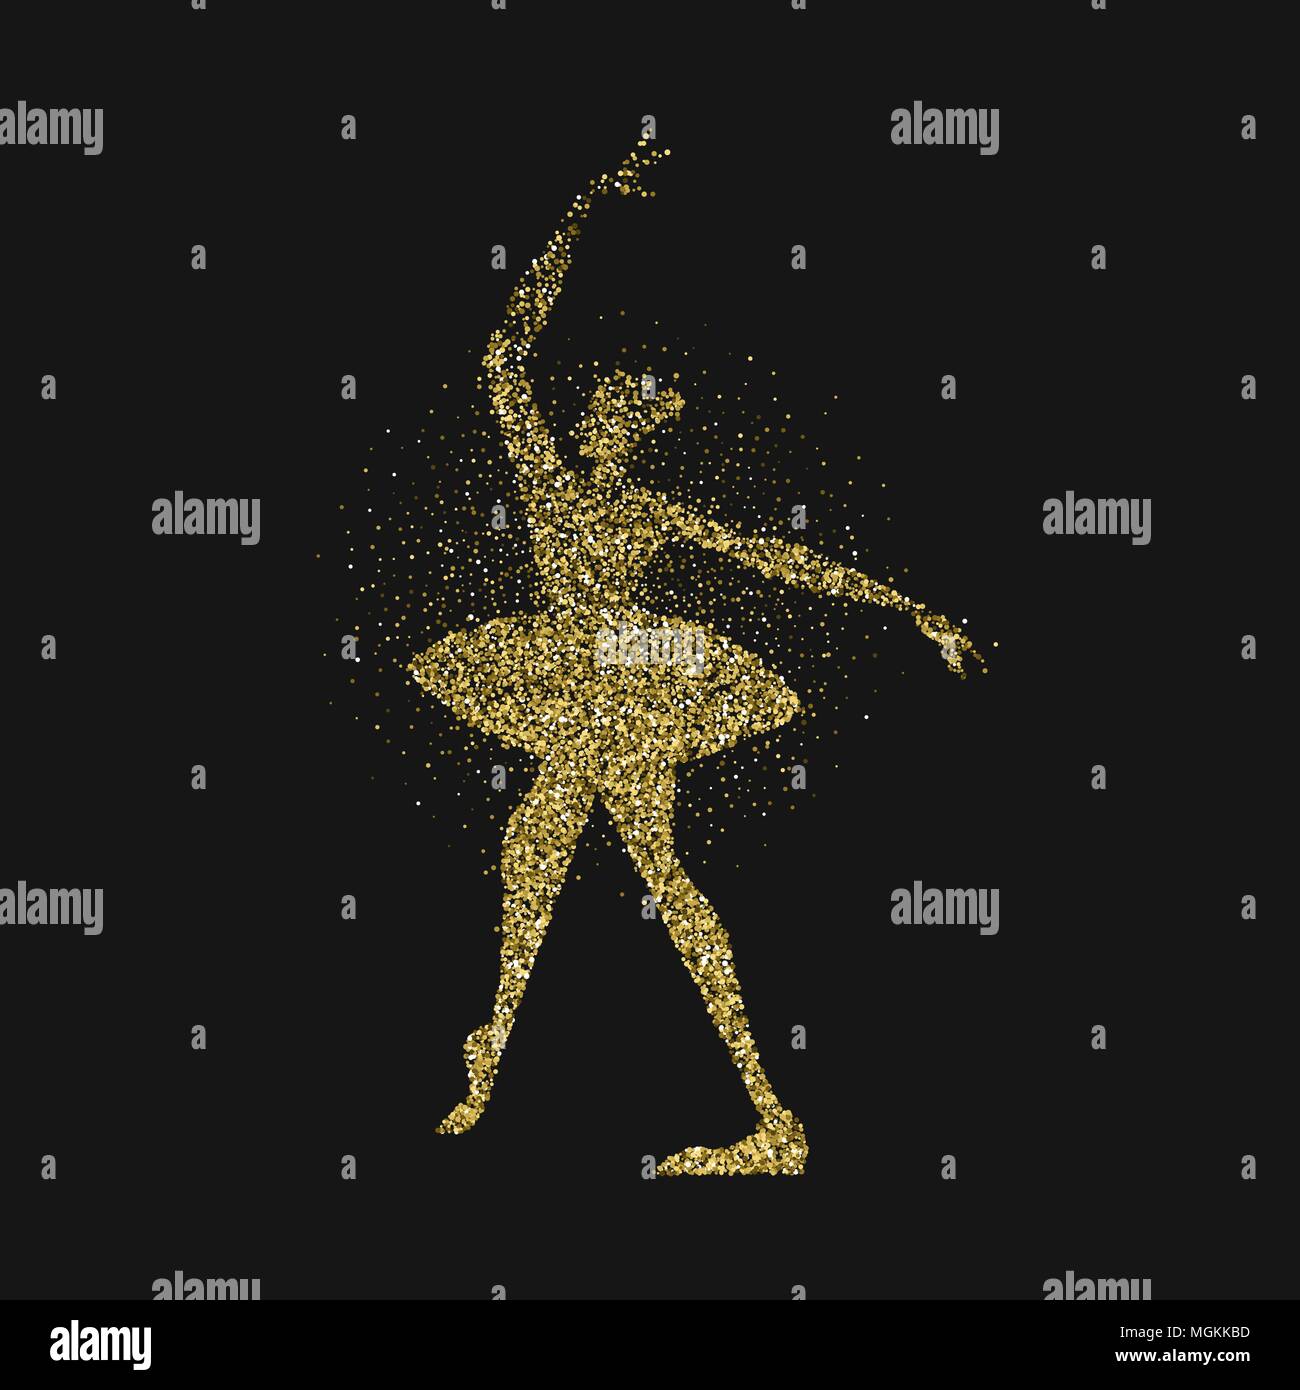 Ballet Dancer girl Silhouette aus gold Glitter staub Splash. ballerina Woman Dancing in motion auf schwarzem Hintergrund. EPS 10 Vektor. Stock Vektor